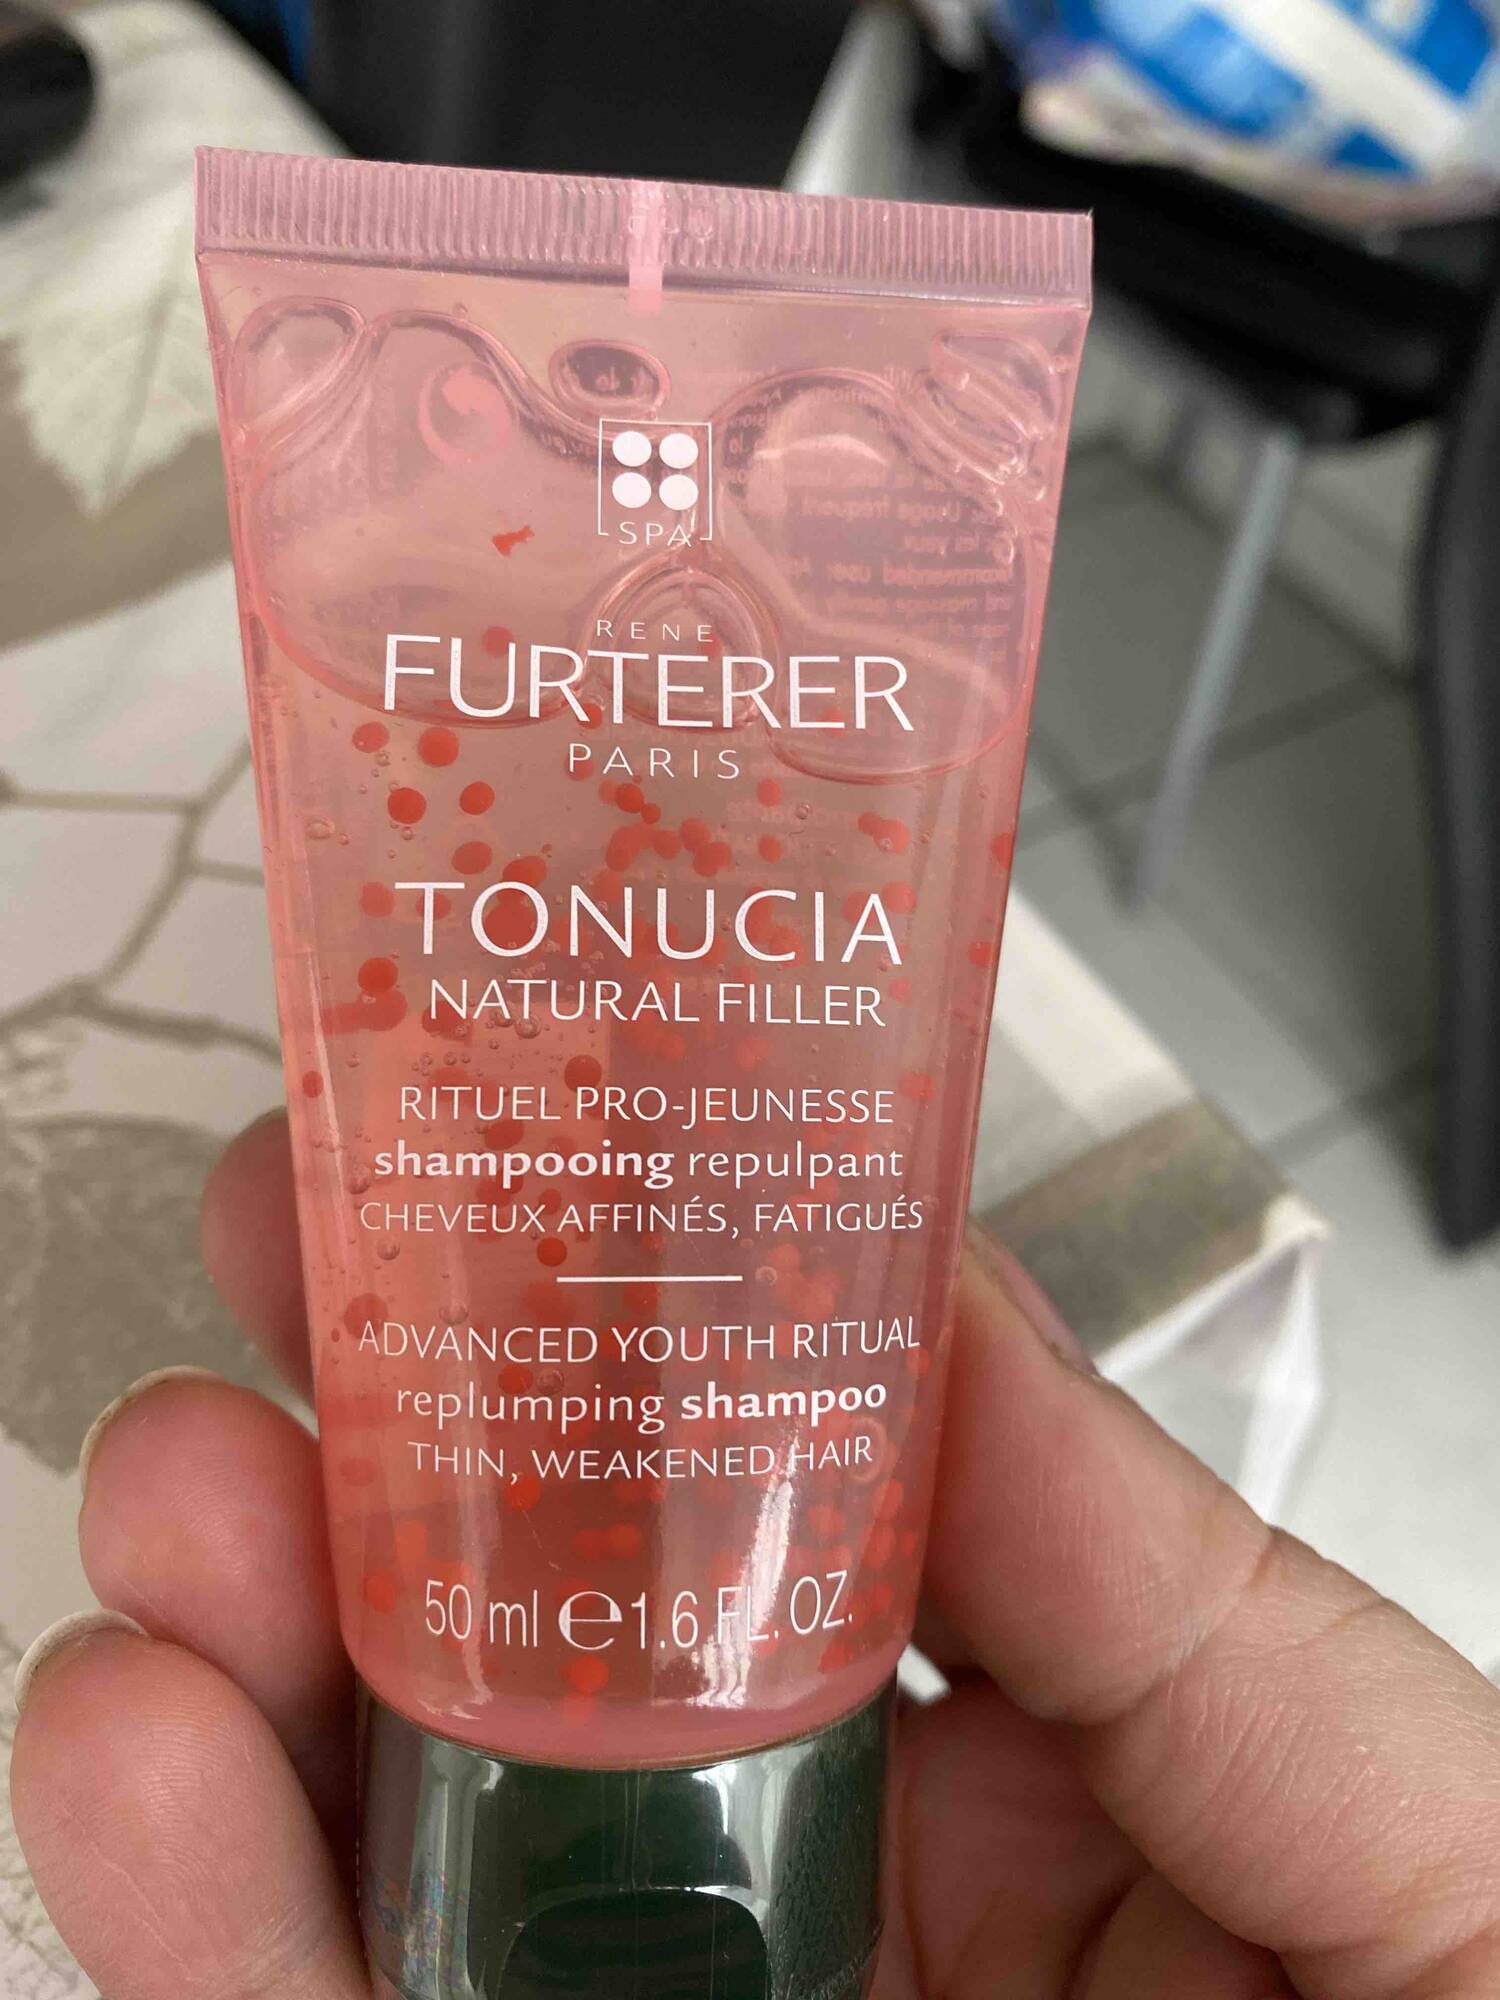 RENÉ FURTERER - Tonucia natural filler - Shampooing repulpant